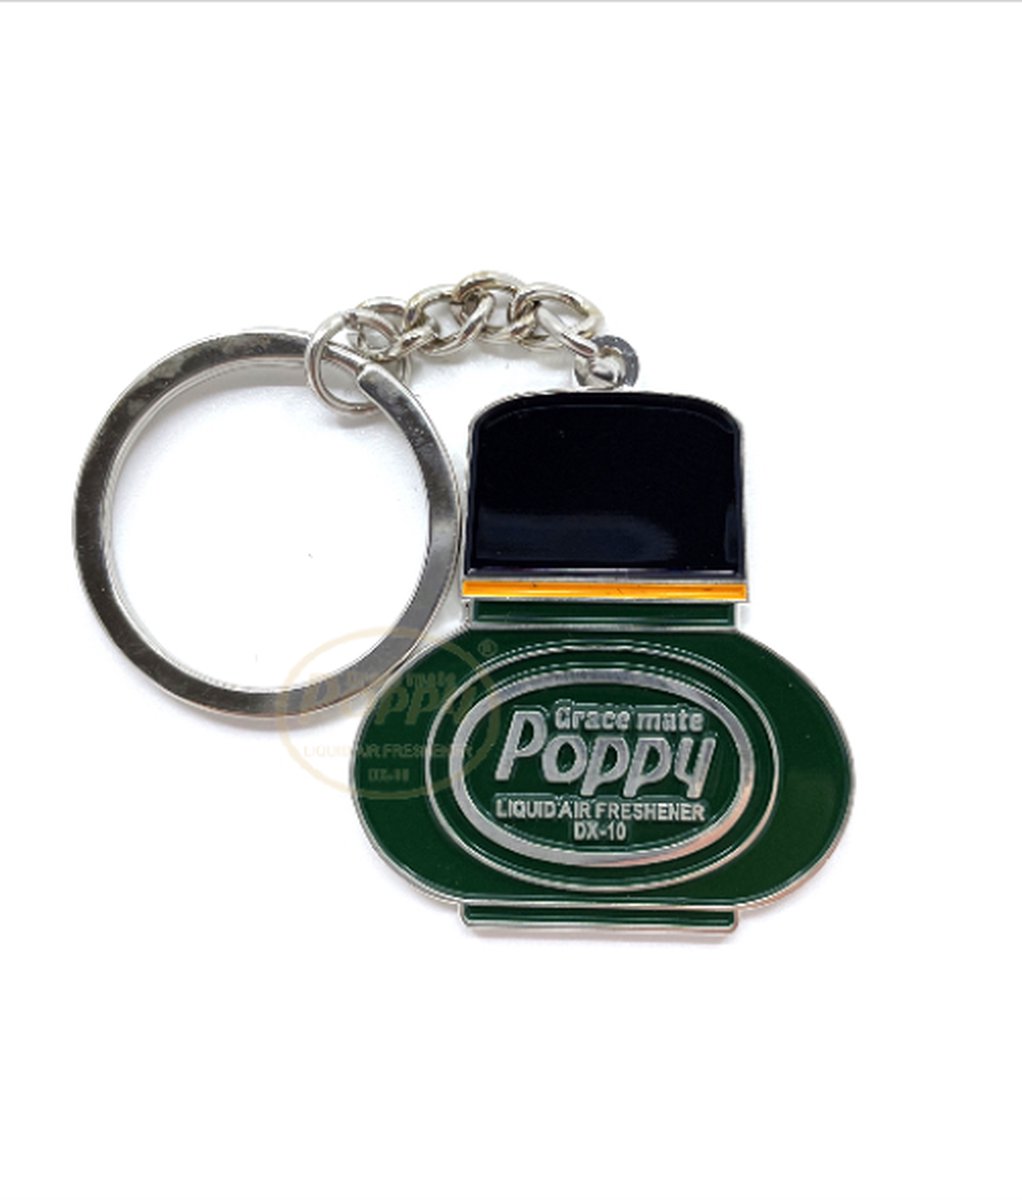 RVS sleutelhanger Poppy Grace Mate Pine Verpakt in een geschenkdoos